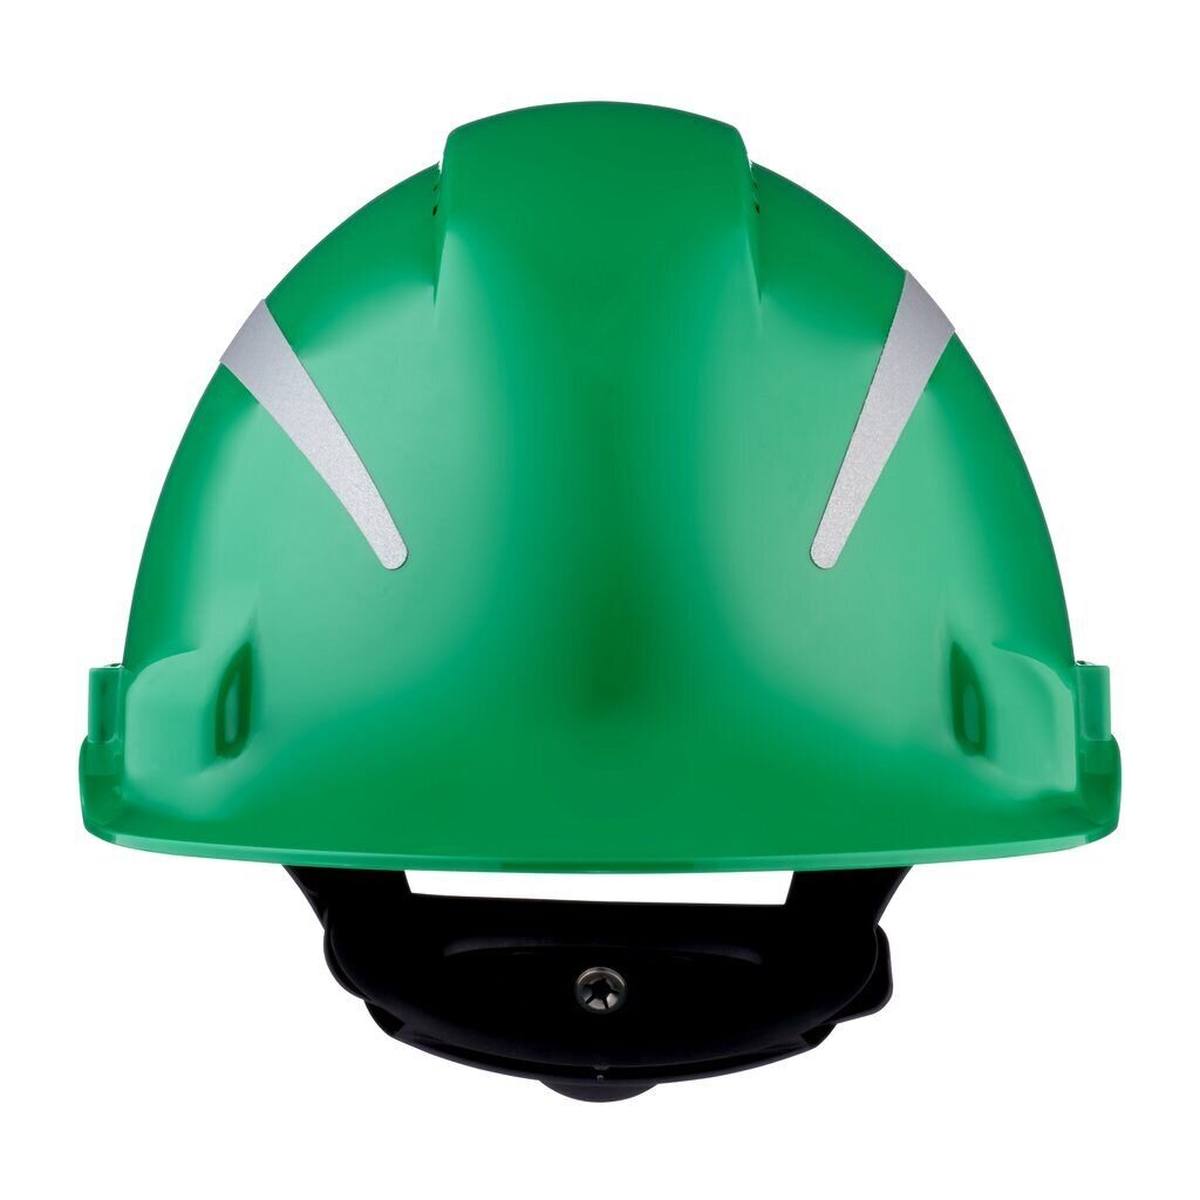 3M Casco de seguridad G3000 con indicador UV, verde, ABS, cierre de trinquete ventilado, banda de sudor de plástico, pegatina reflectante